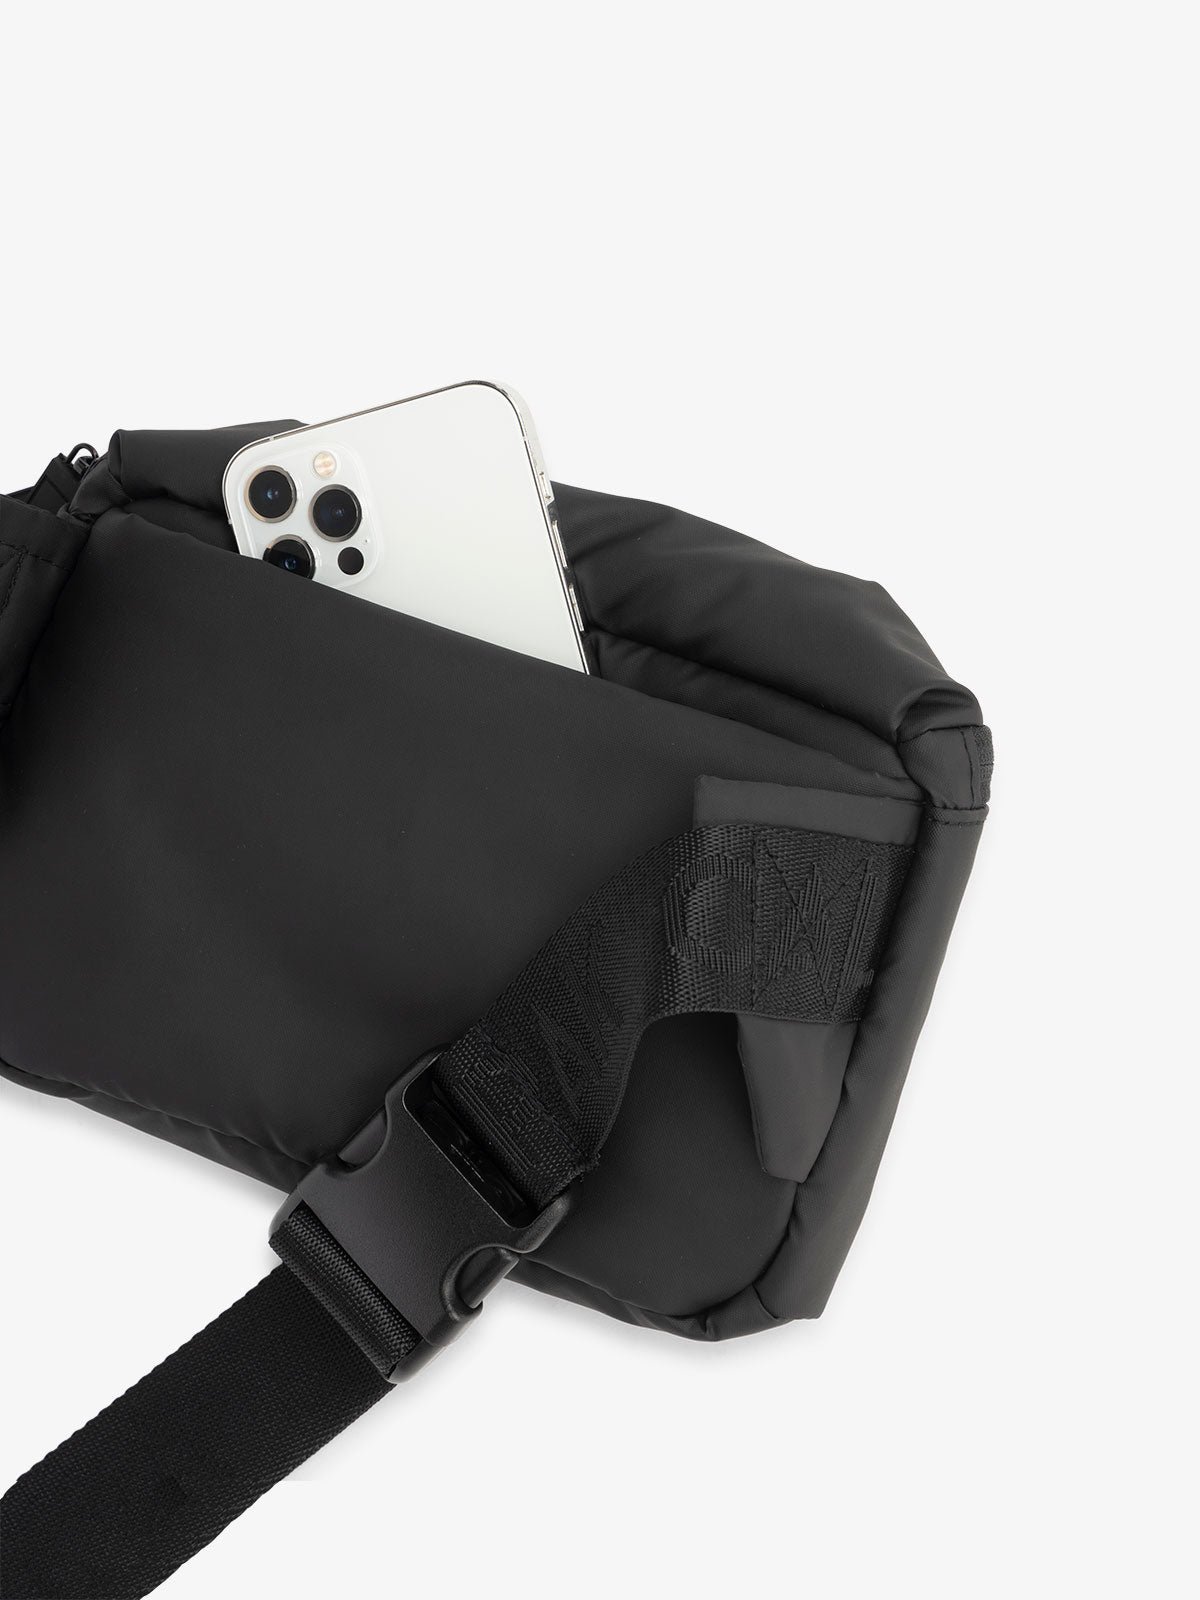 CALPAK Luka everyday small Belt Bag with adjustable strap and hidden back pocket in black